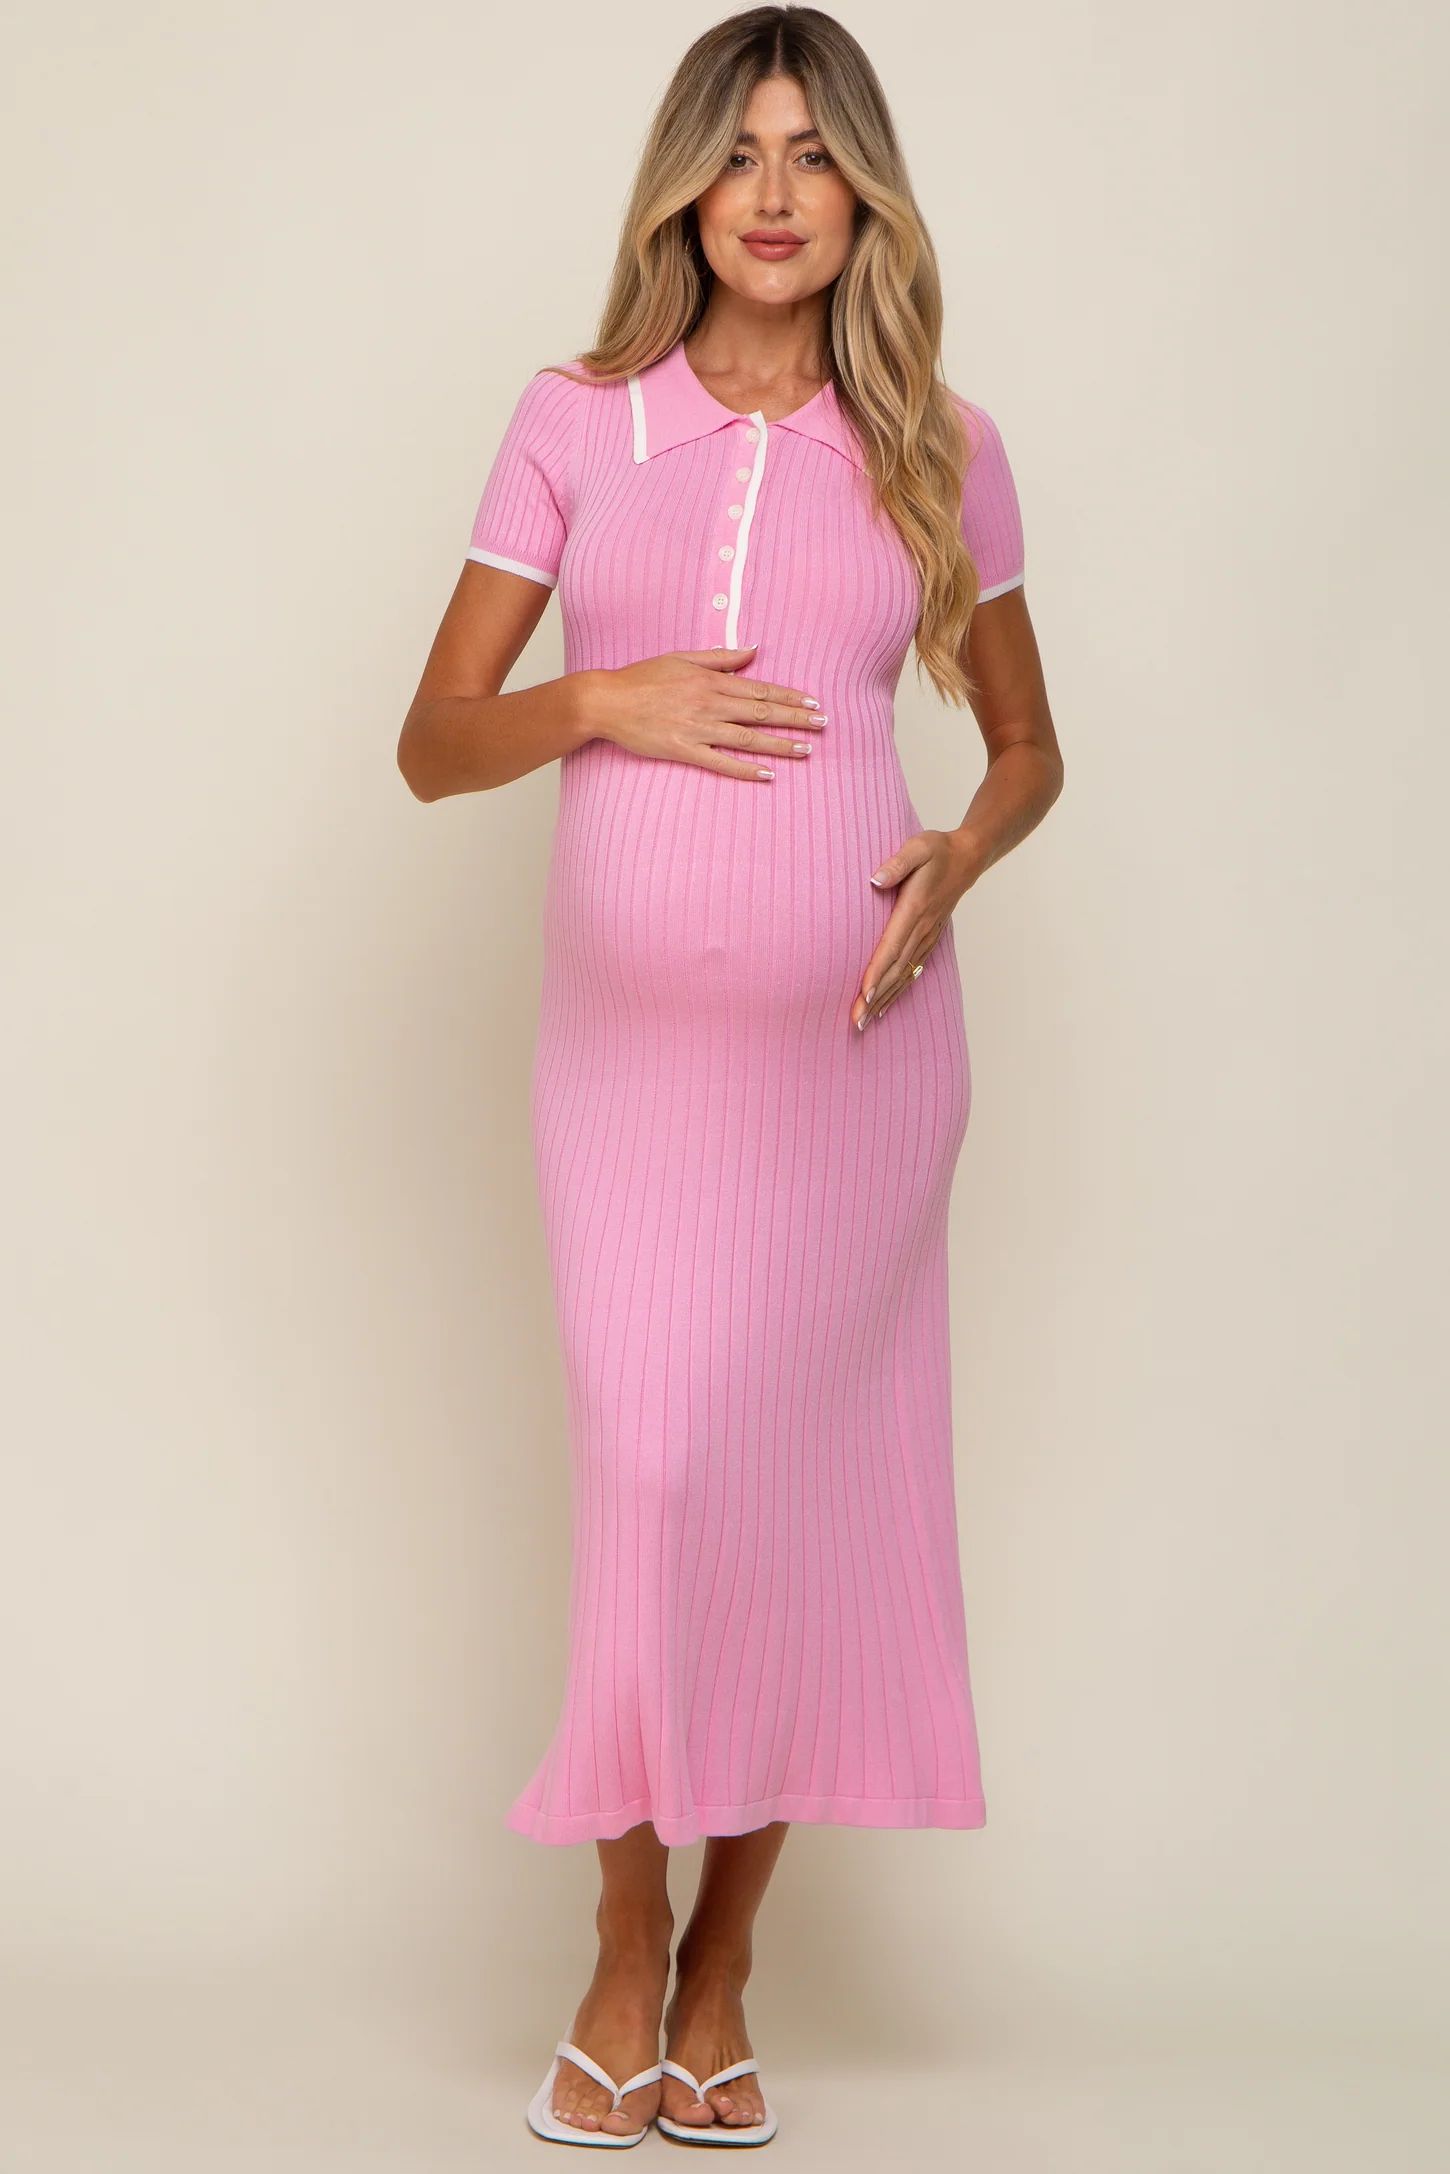 Pink Collared Knit Maternity Midi Dress | PinkBlush Maternity